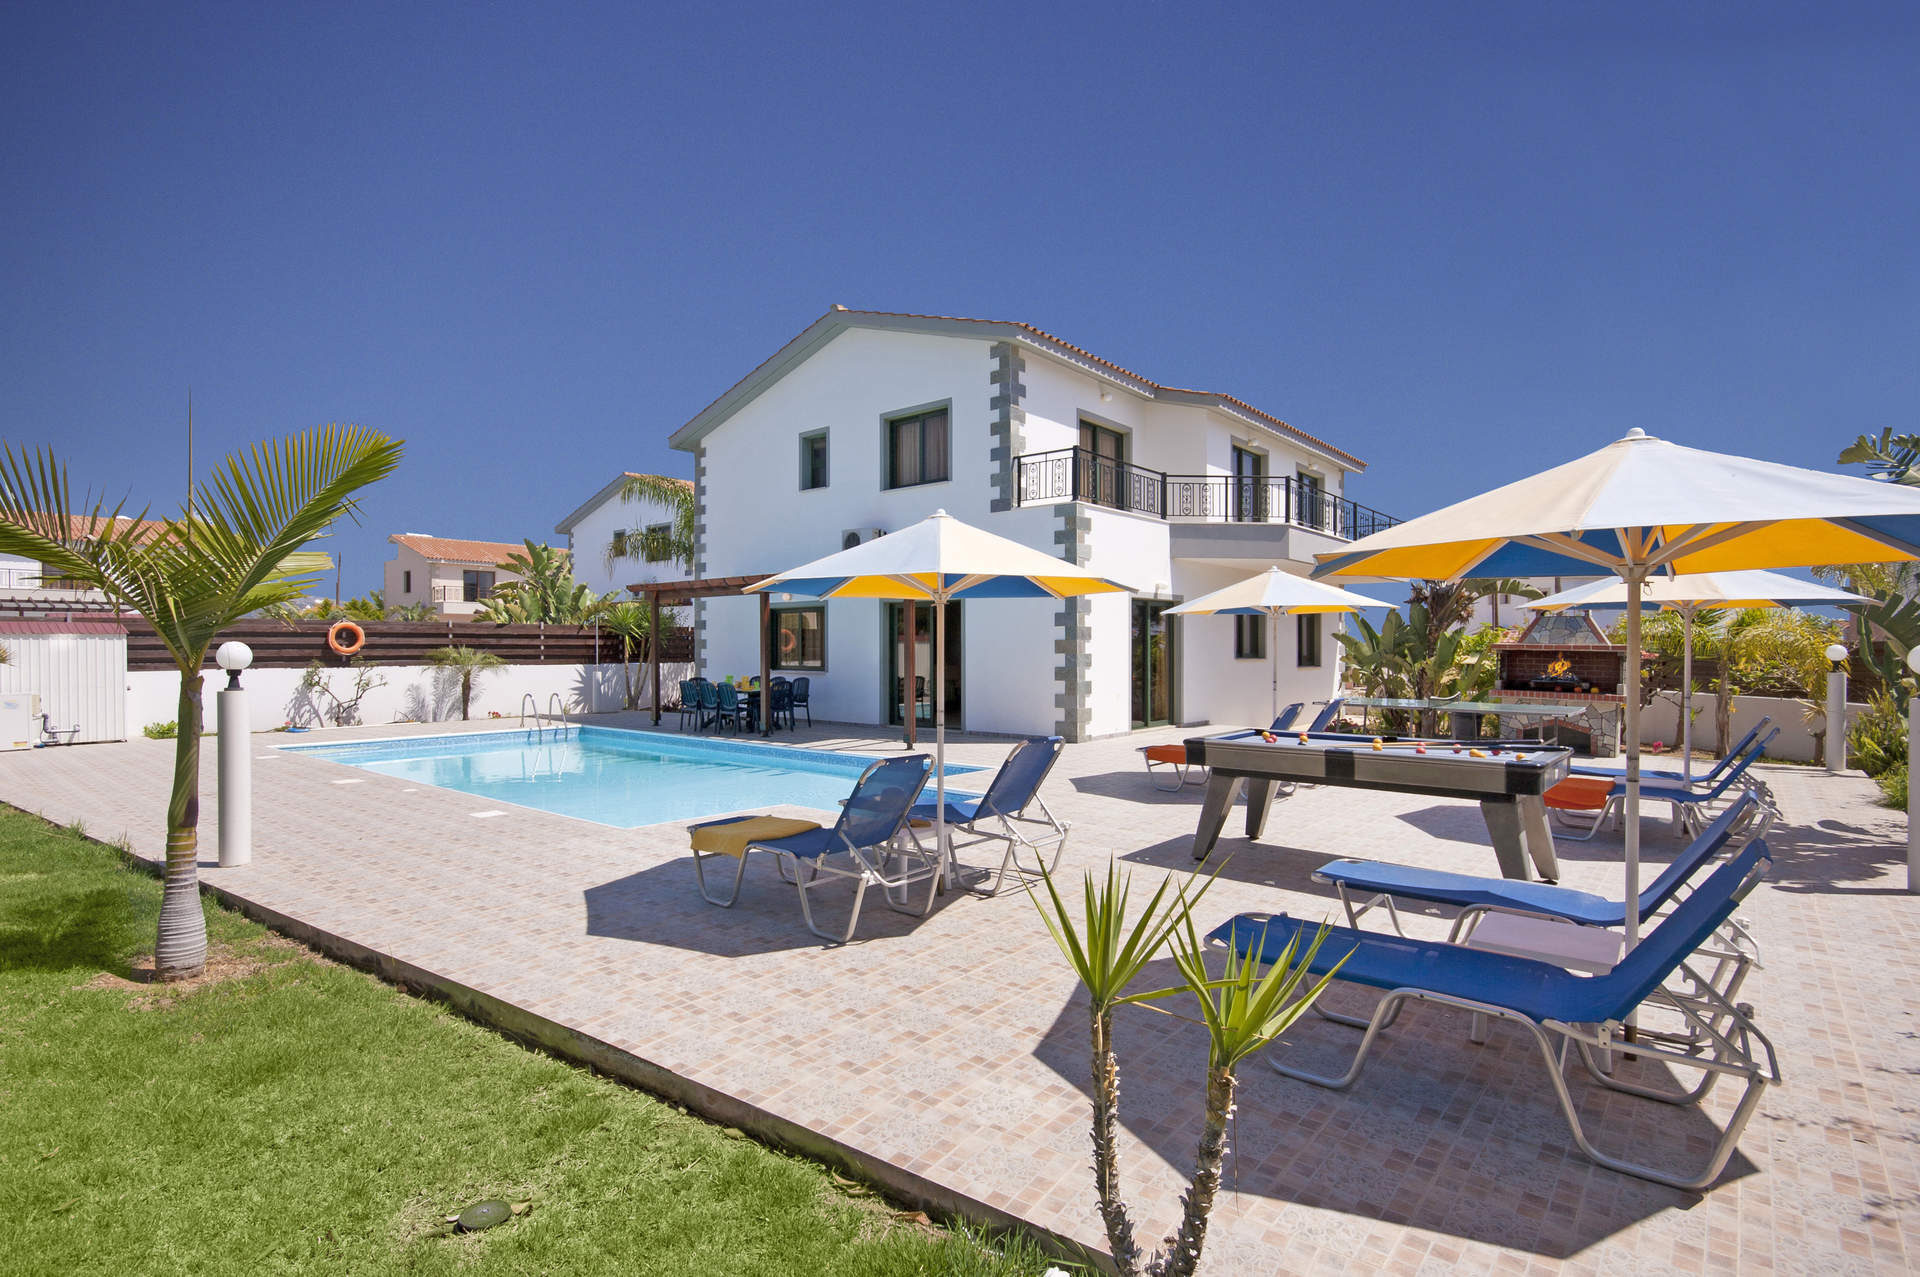 Villa Coral Christina In Coral Bay Cyprus Villa Plus - 